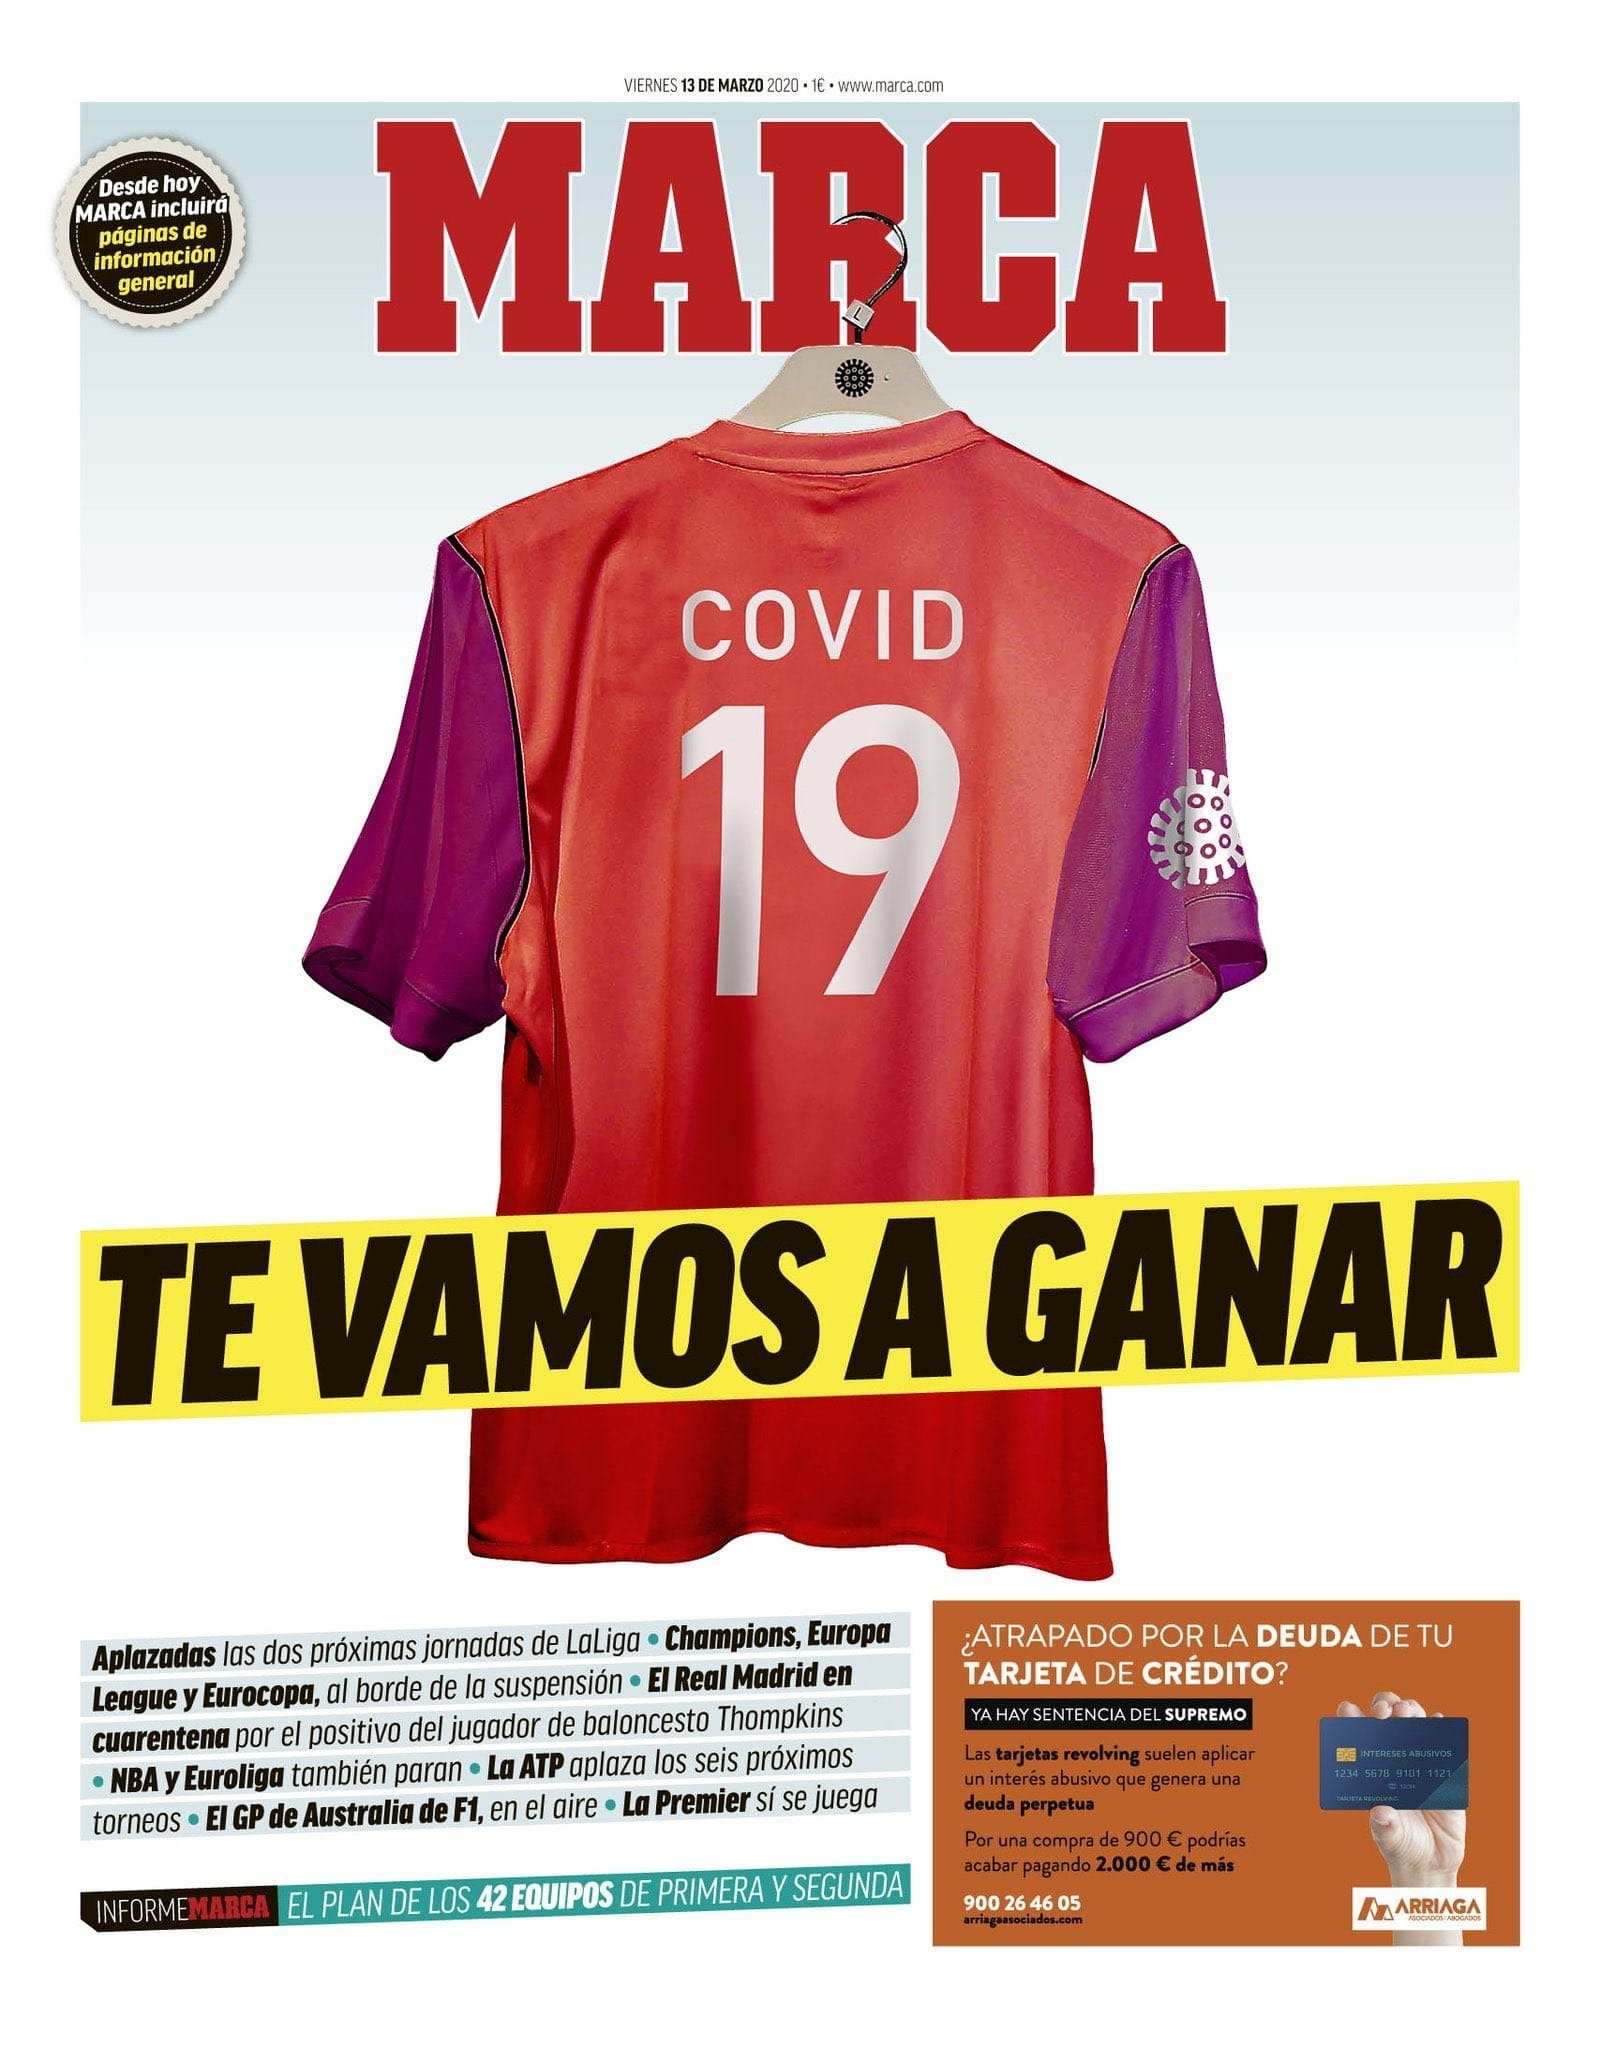 MARCA COVID-19 jersey